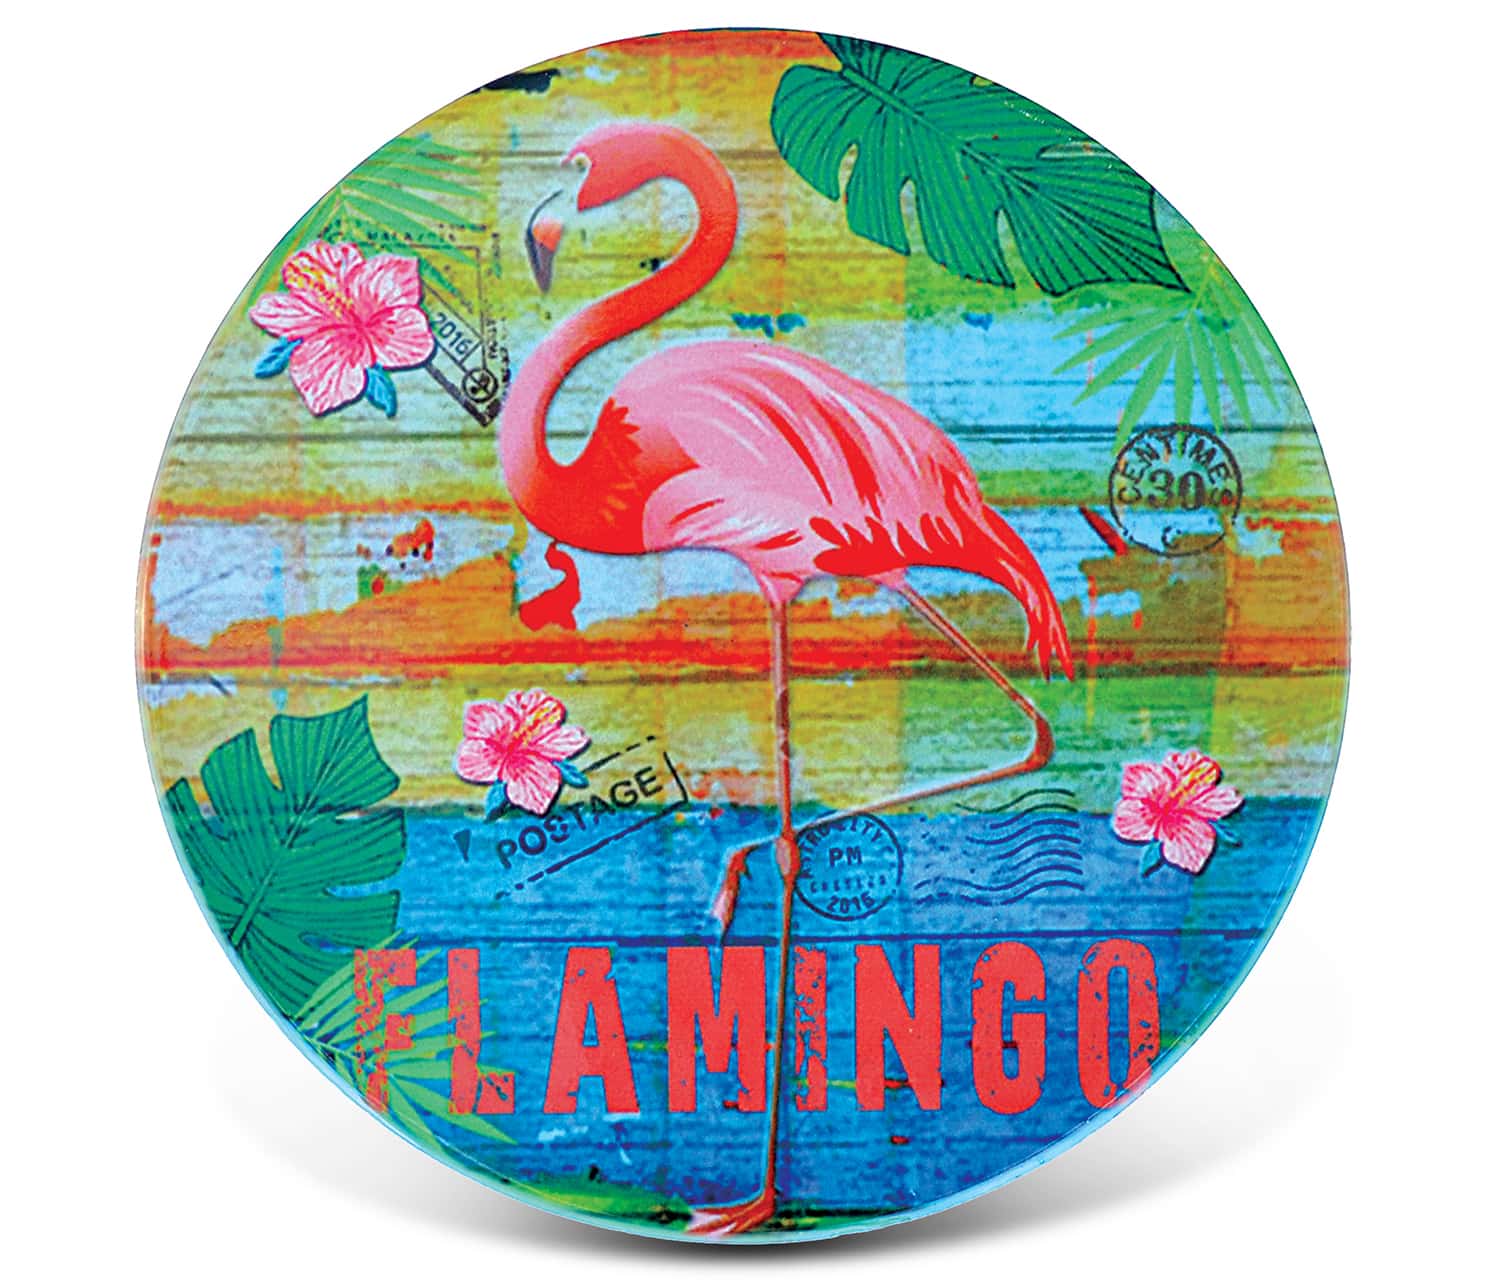 Flamingo – Ceramic Coaster